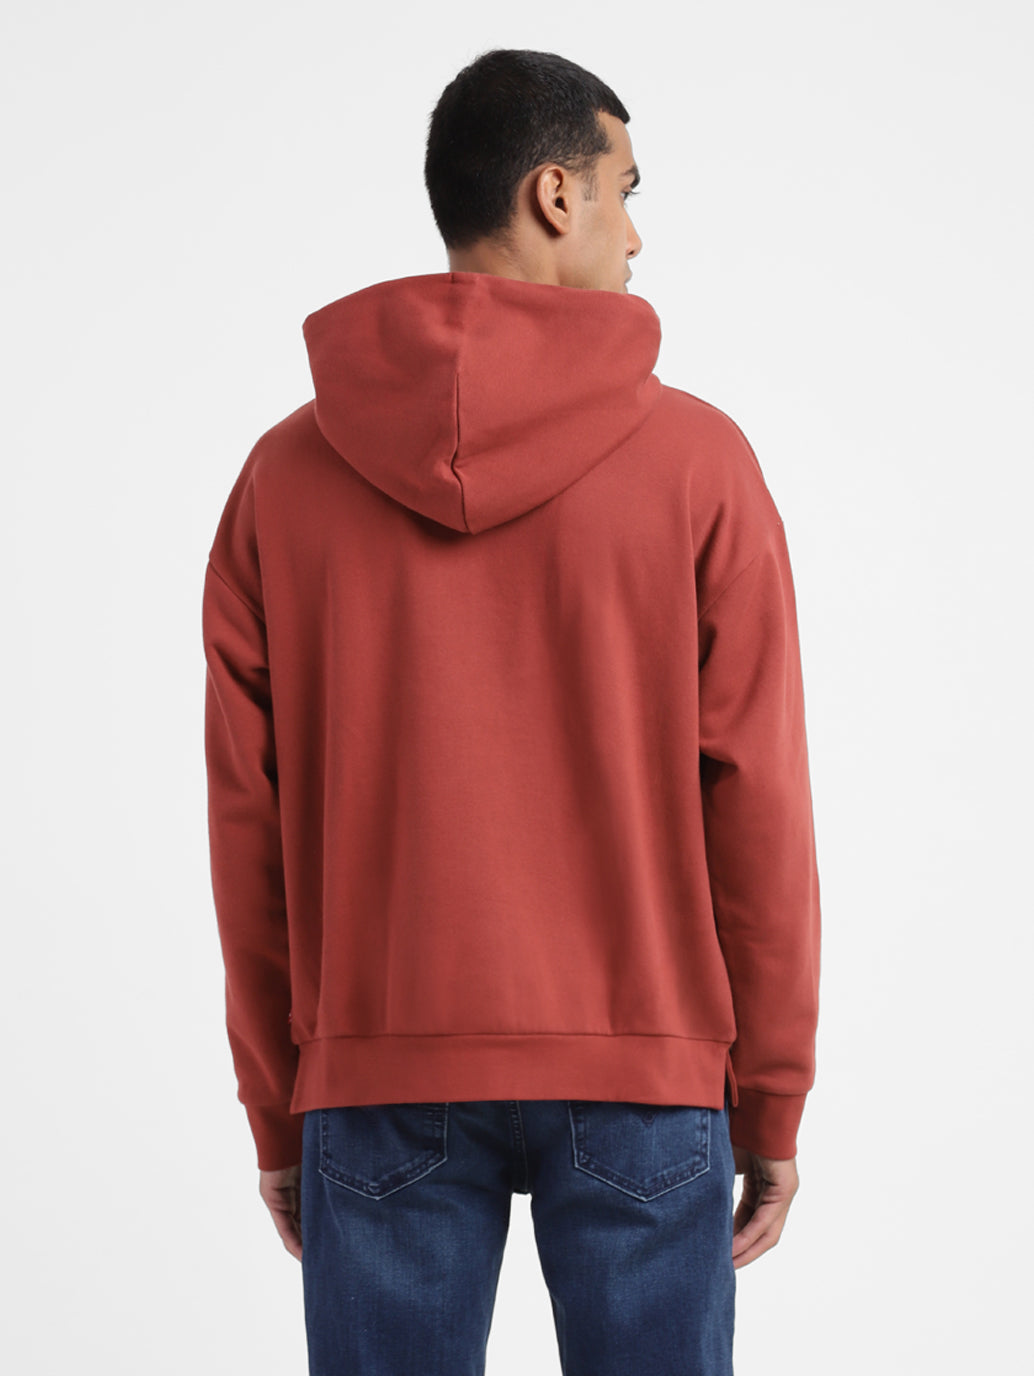 Men's Solid Hooded Sweatshirt